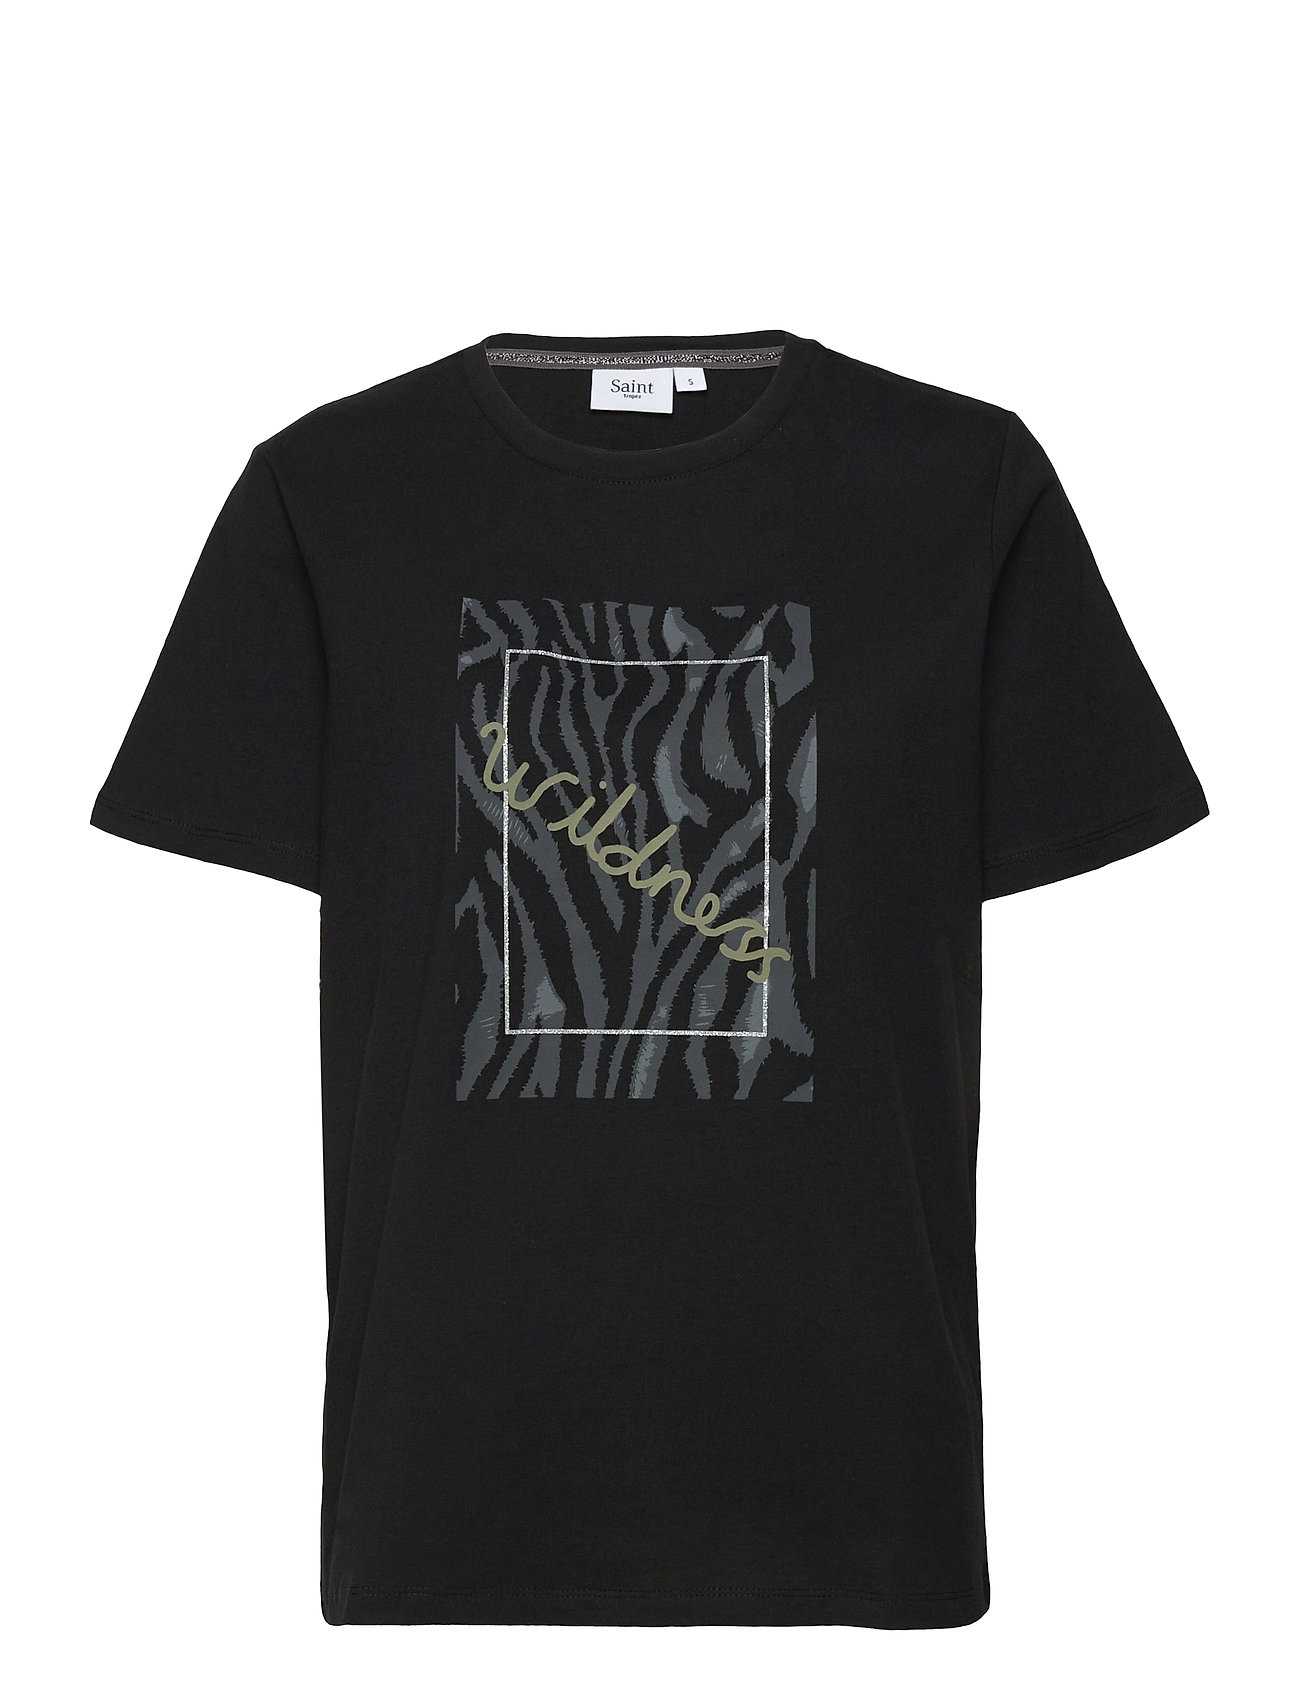 Eilasz T-Shirt T-shirts & Tops Short-sleeved Musta Saint Tropez